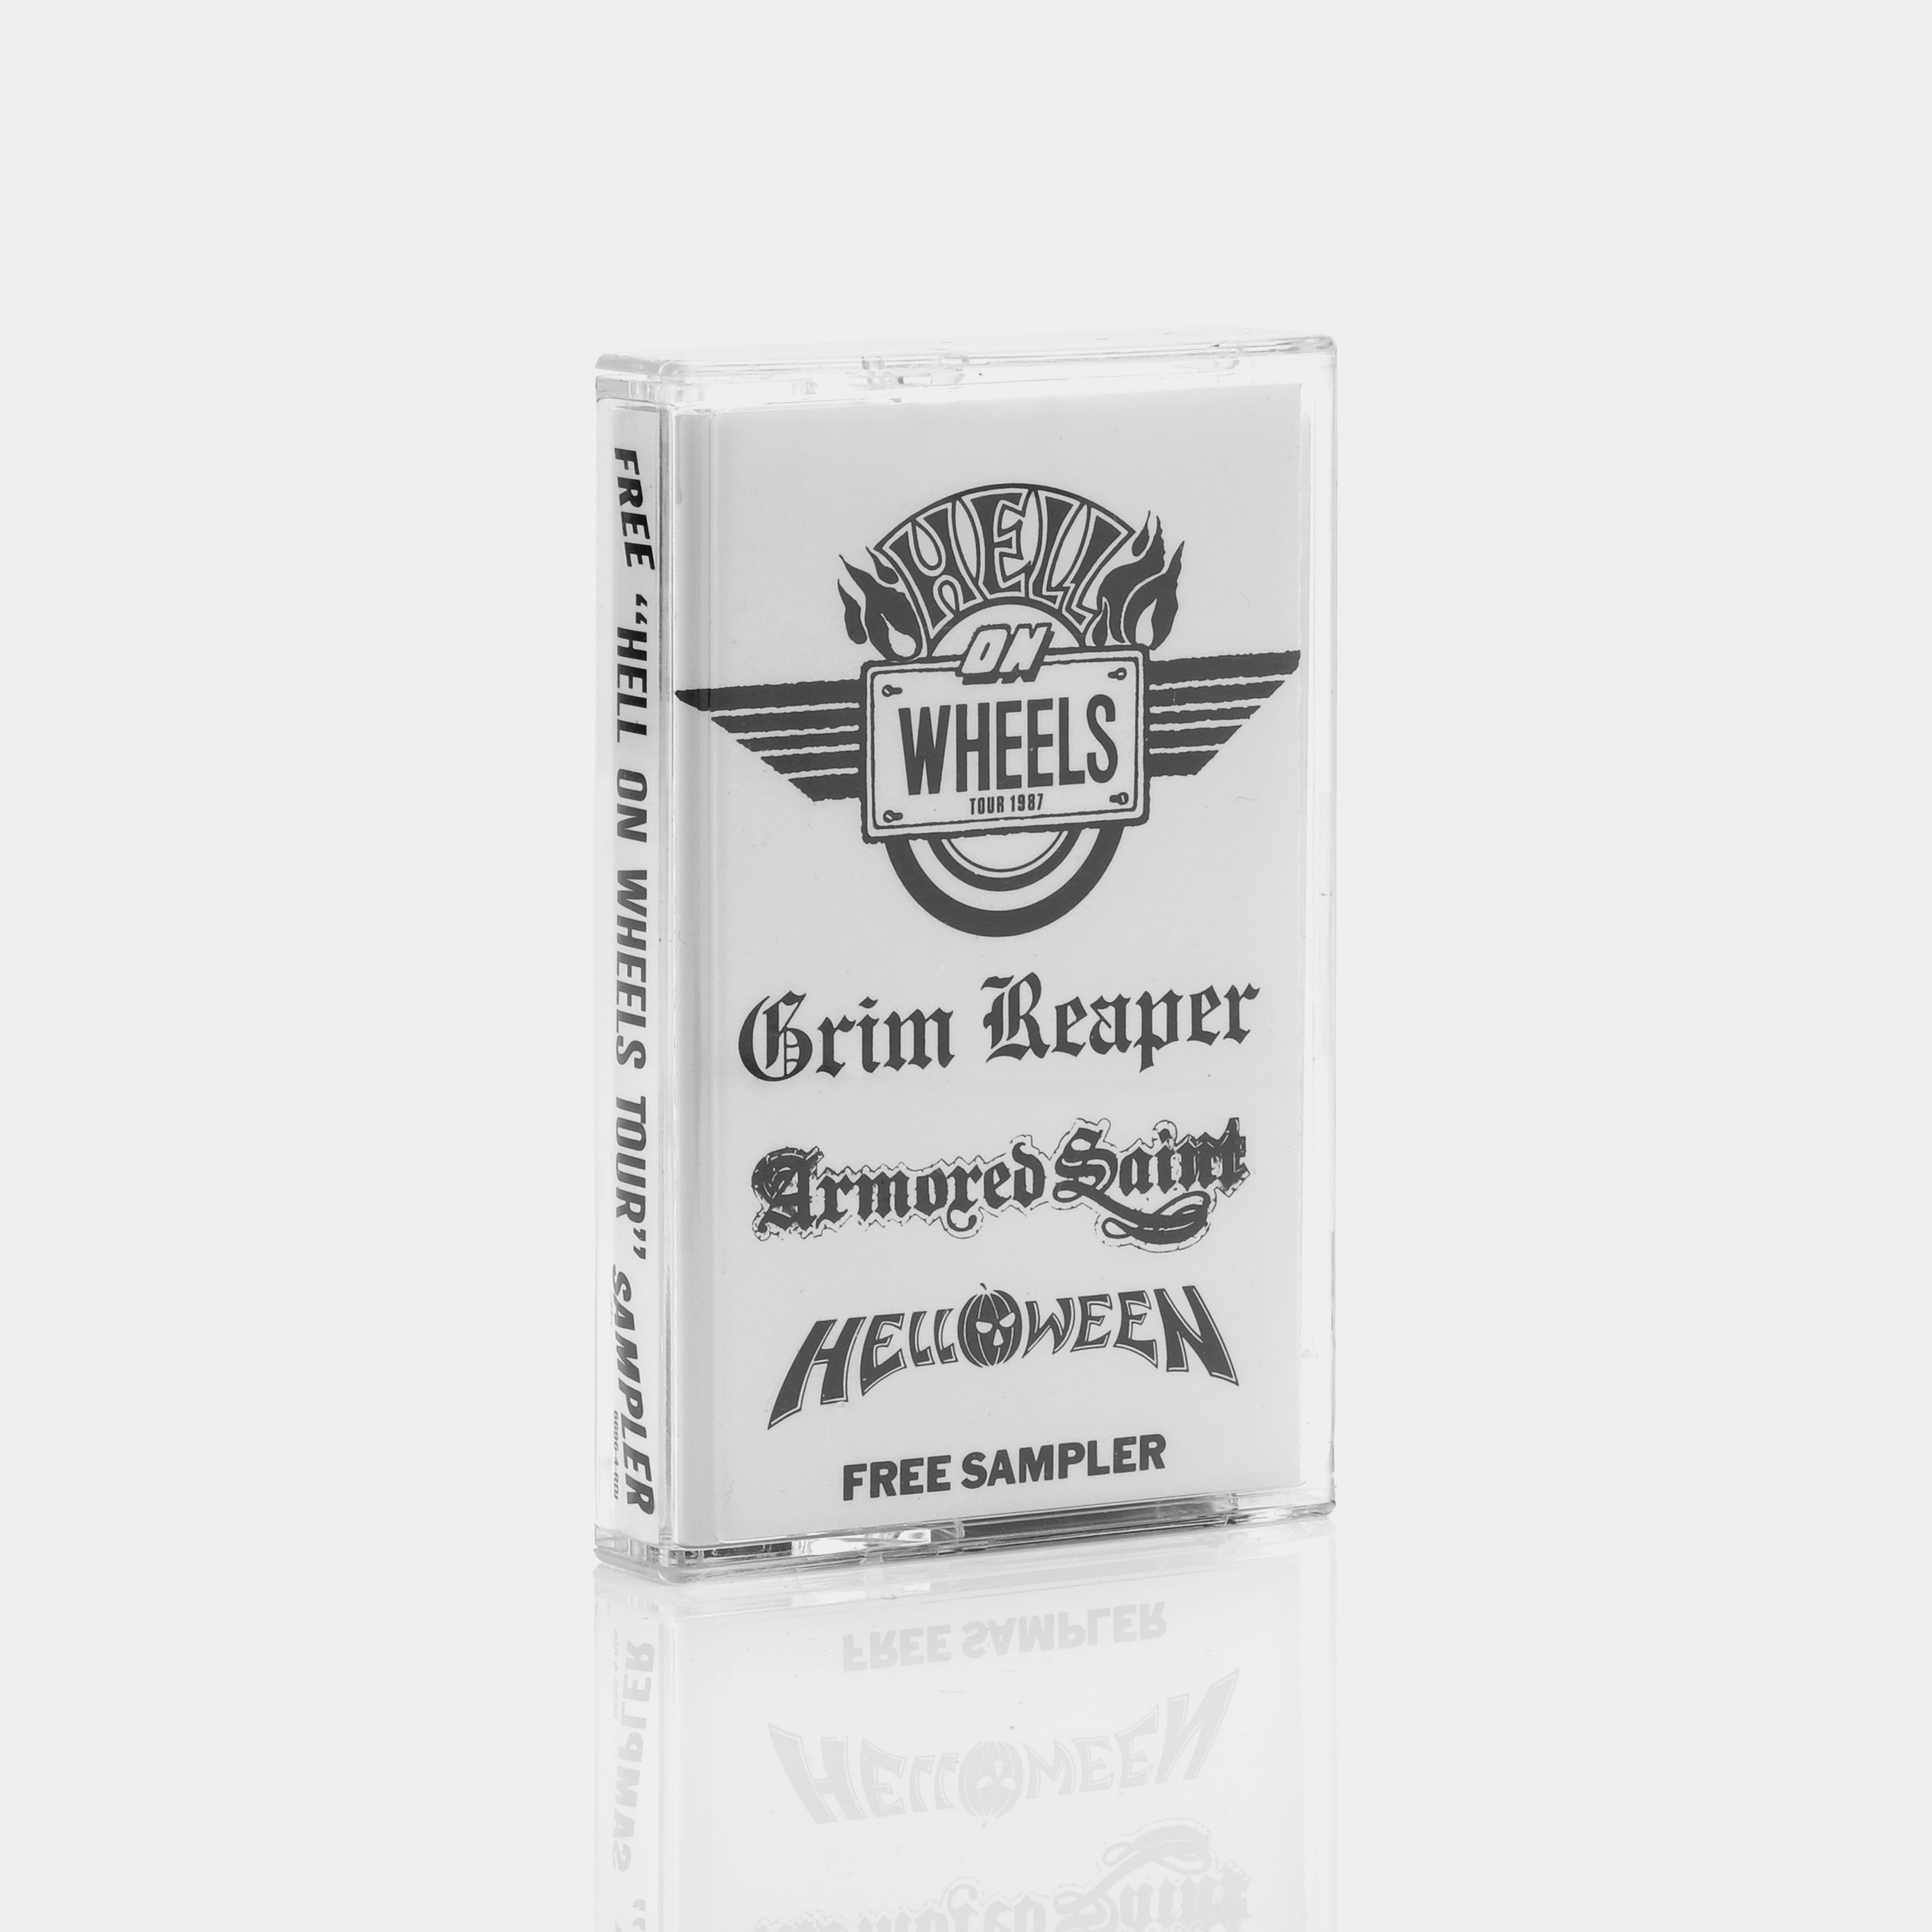 Hell On Wheels Tour Sampler Cassette Tape